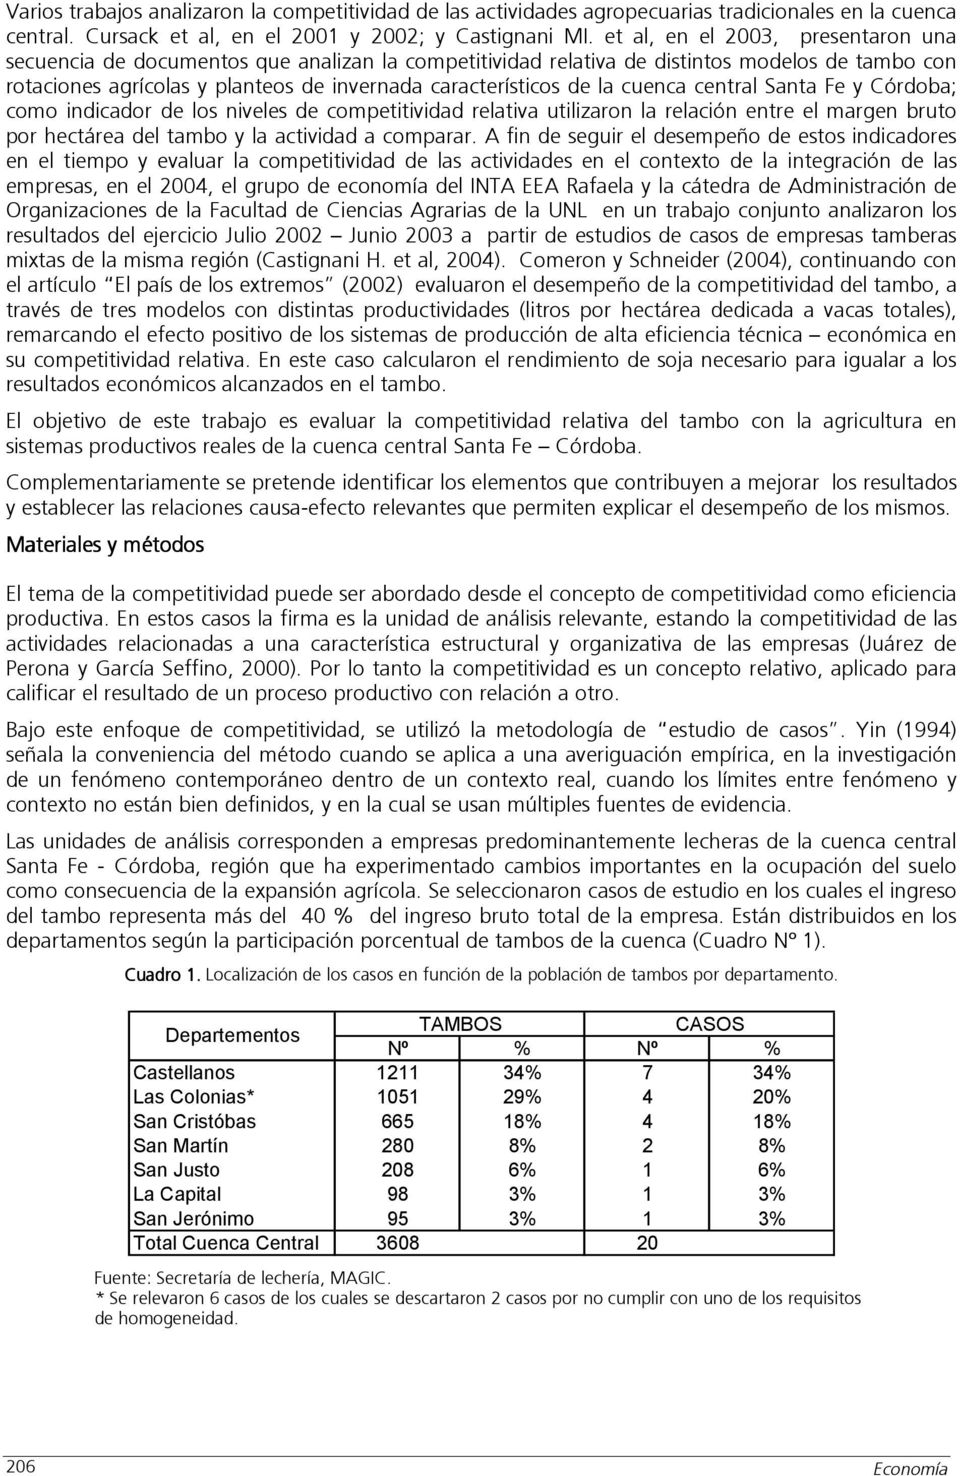 cuenca central Santa Fe y Córdoba; como indicador de los niveles de competitividad relativa utilizaron la relación entre el margen bruto por hectárea del tambo y la actividad a comparar.